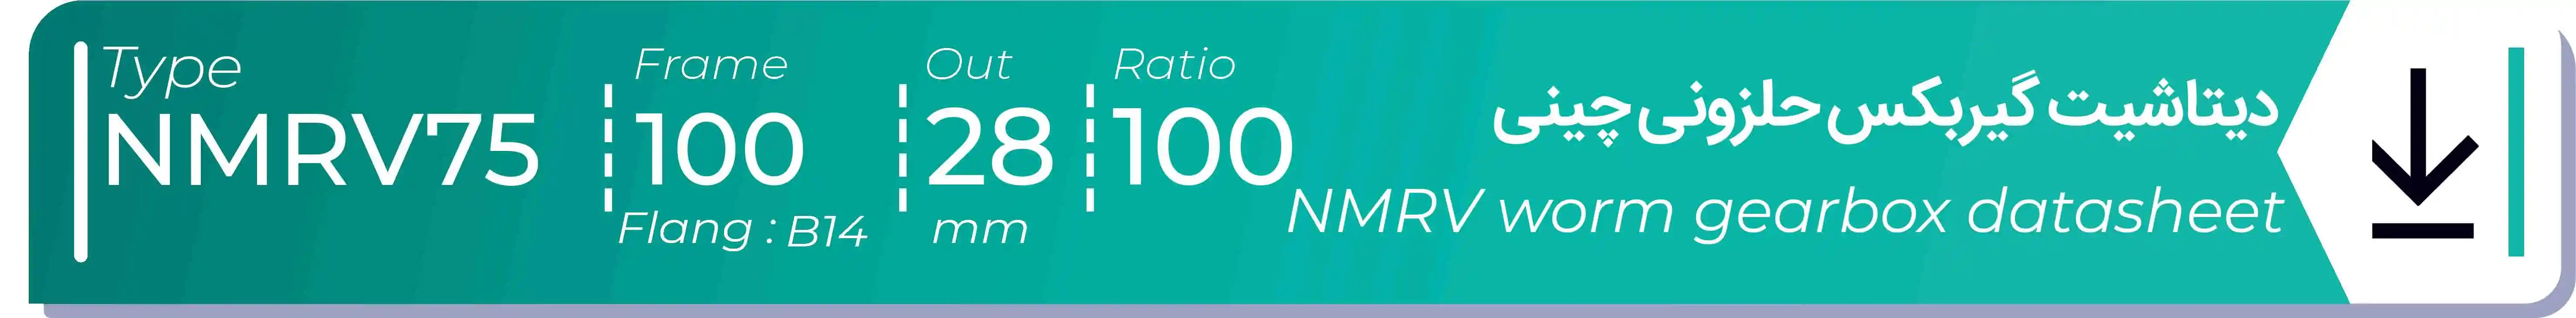  دیتاشیت و مشخصات فنی گیربکس حلزونی چینی   NMRV75  -  با خروجی 28- میلی متر و نسبت100 و فریم 100